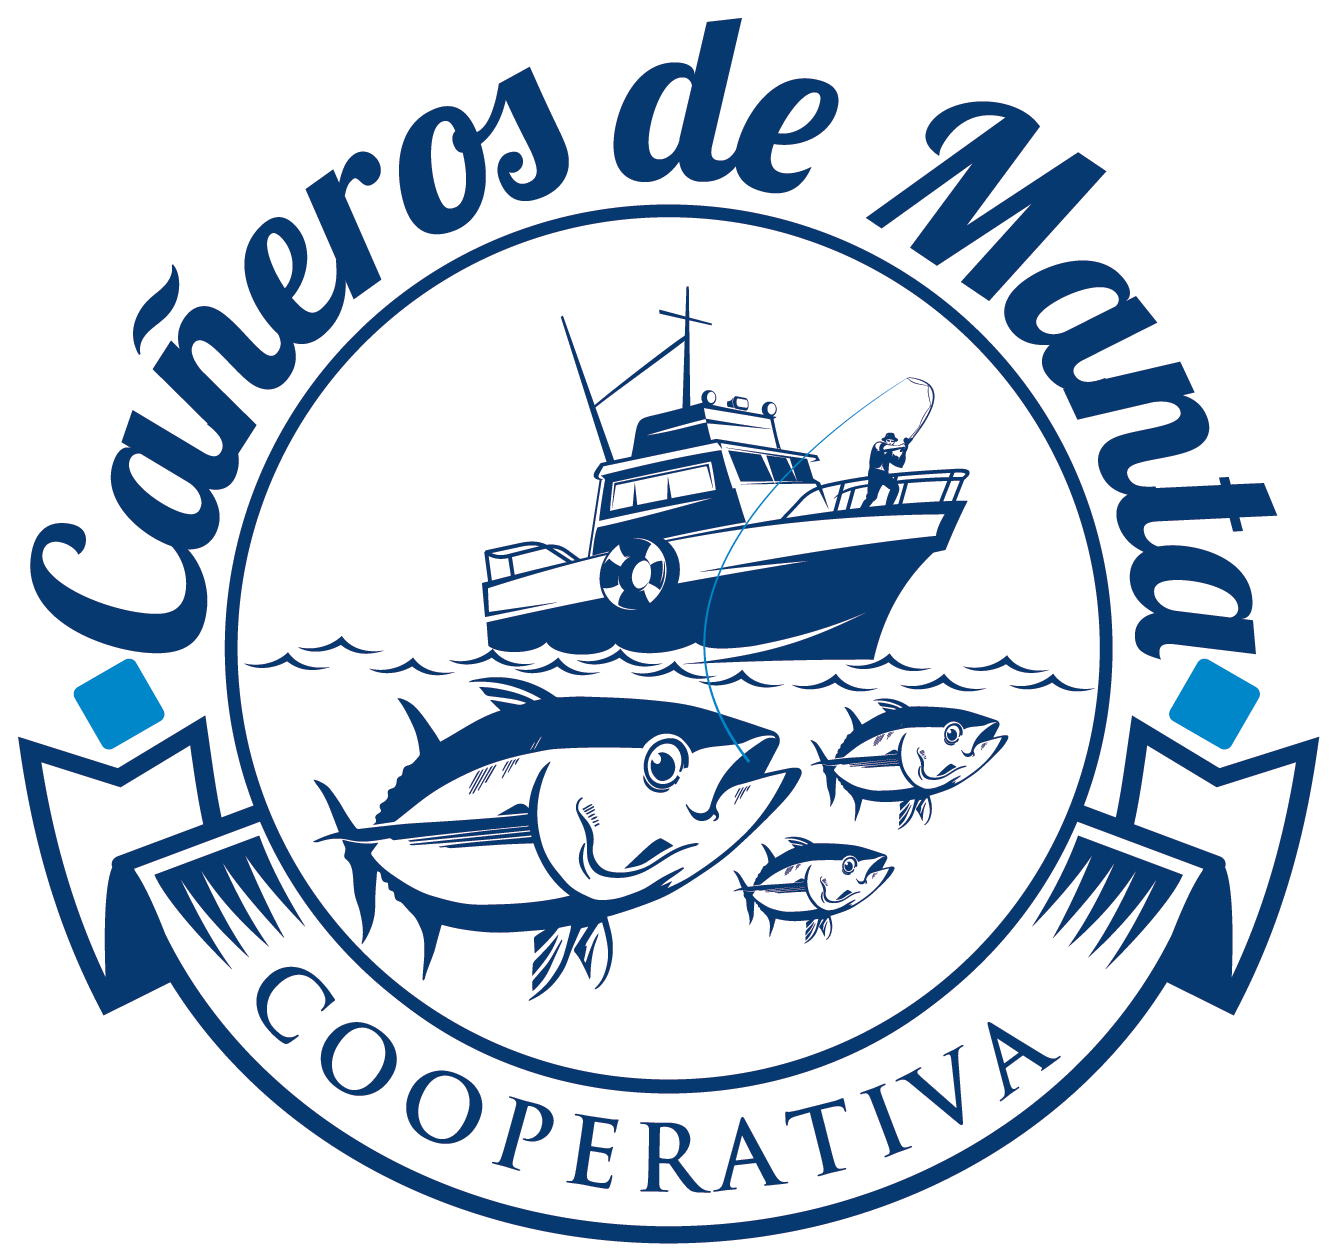 Cooperativa Cañeros De Manta - International Pole & Line Foundation (ipnlf) (1583x1583)